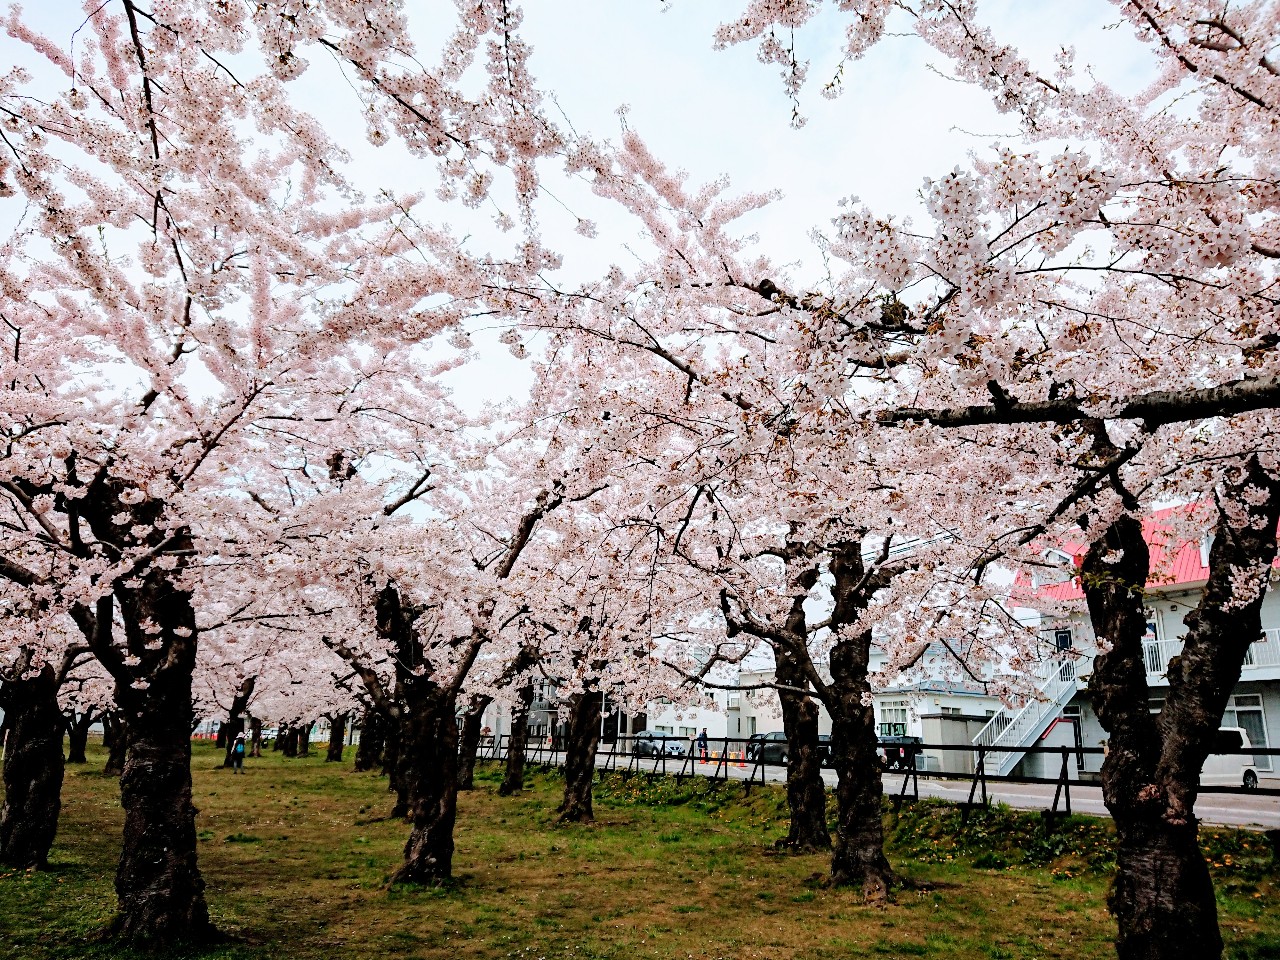 函館市 今年は外堀しか歩けませんが外堀から見る五稜郭公園の桜もキレイです 号外net 函館市 渡島支庁